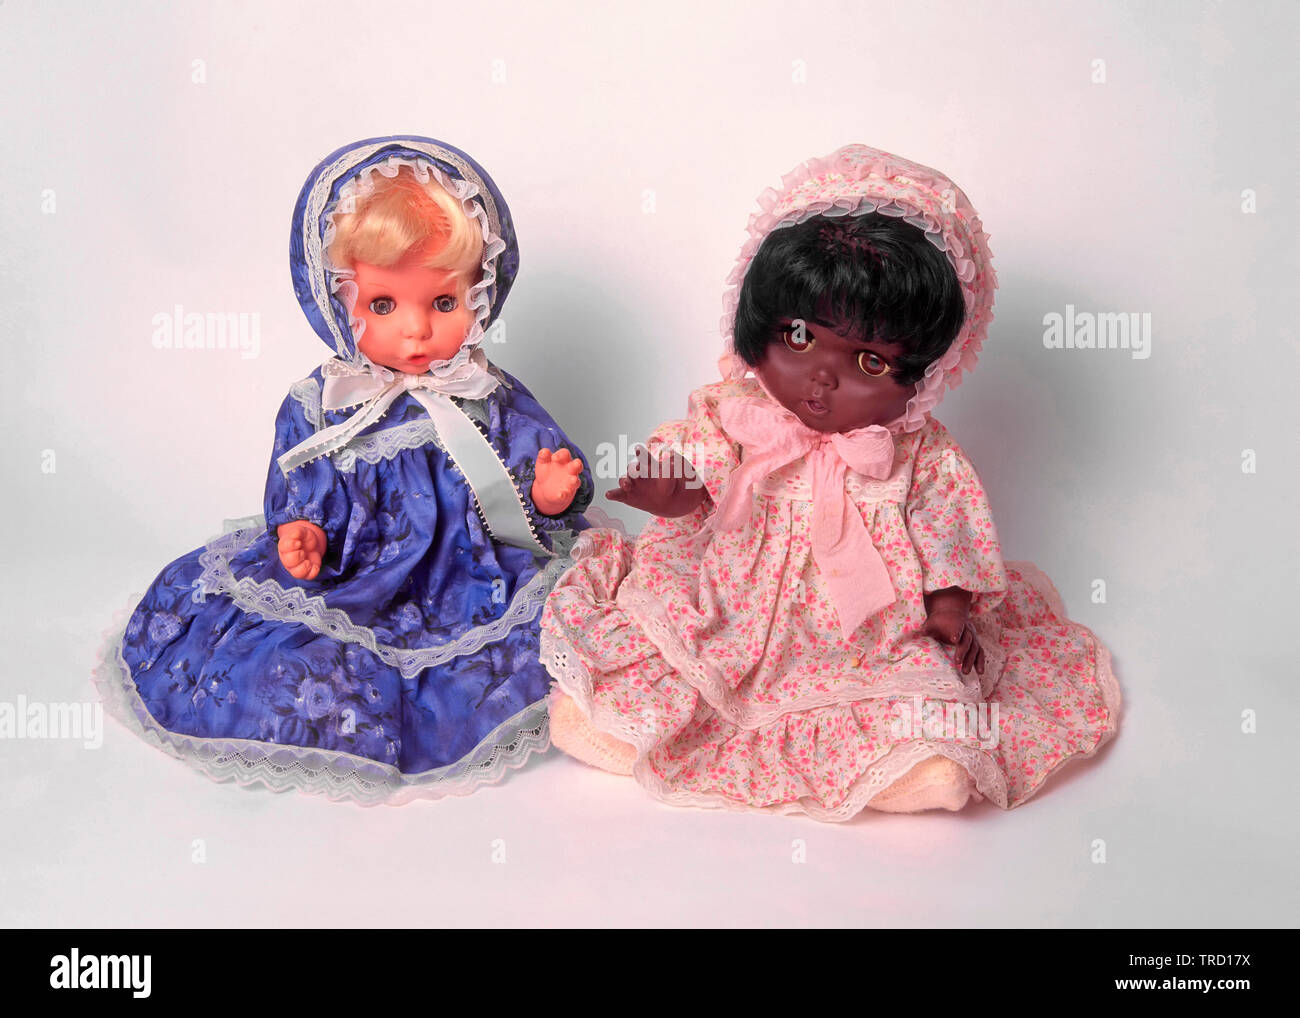 Schwarze und weiße Kinder Spielzeug Puppe hübschen Puppen tragen Kleider saßen zusammen Weiß studio Hintergrund Konzept Ideen Bild rassische Harmonie und Vielfalt Stockfoto